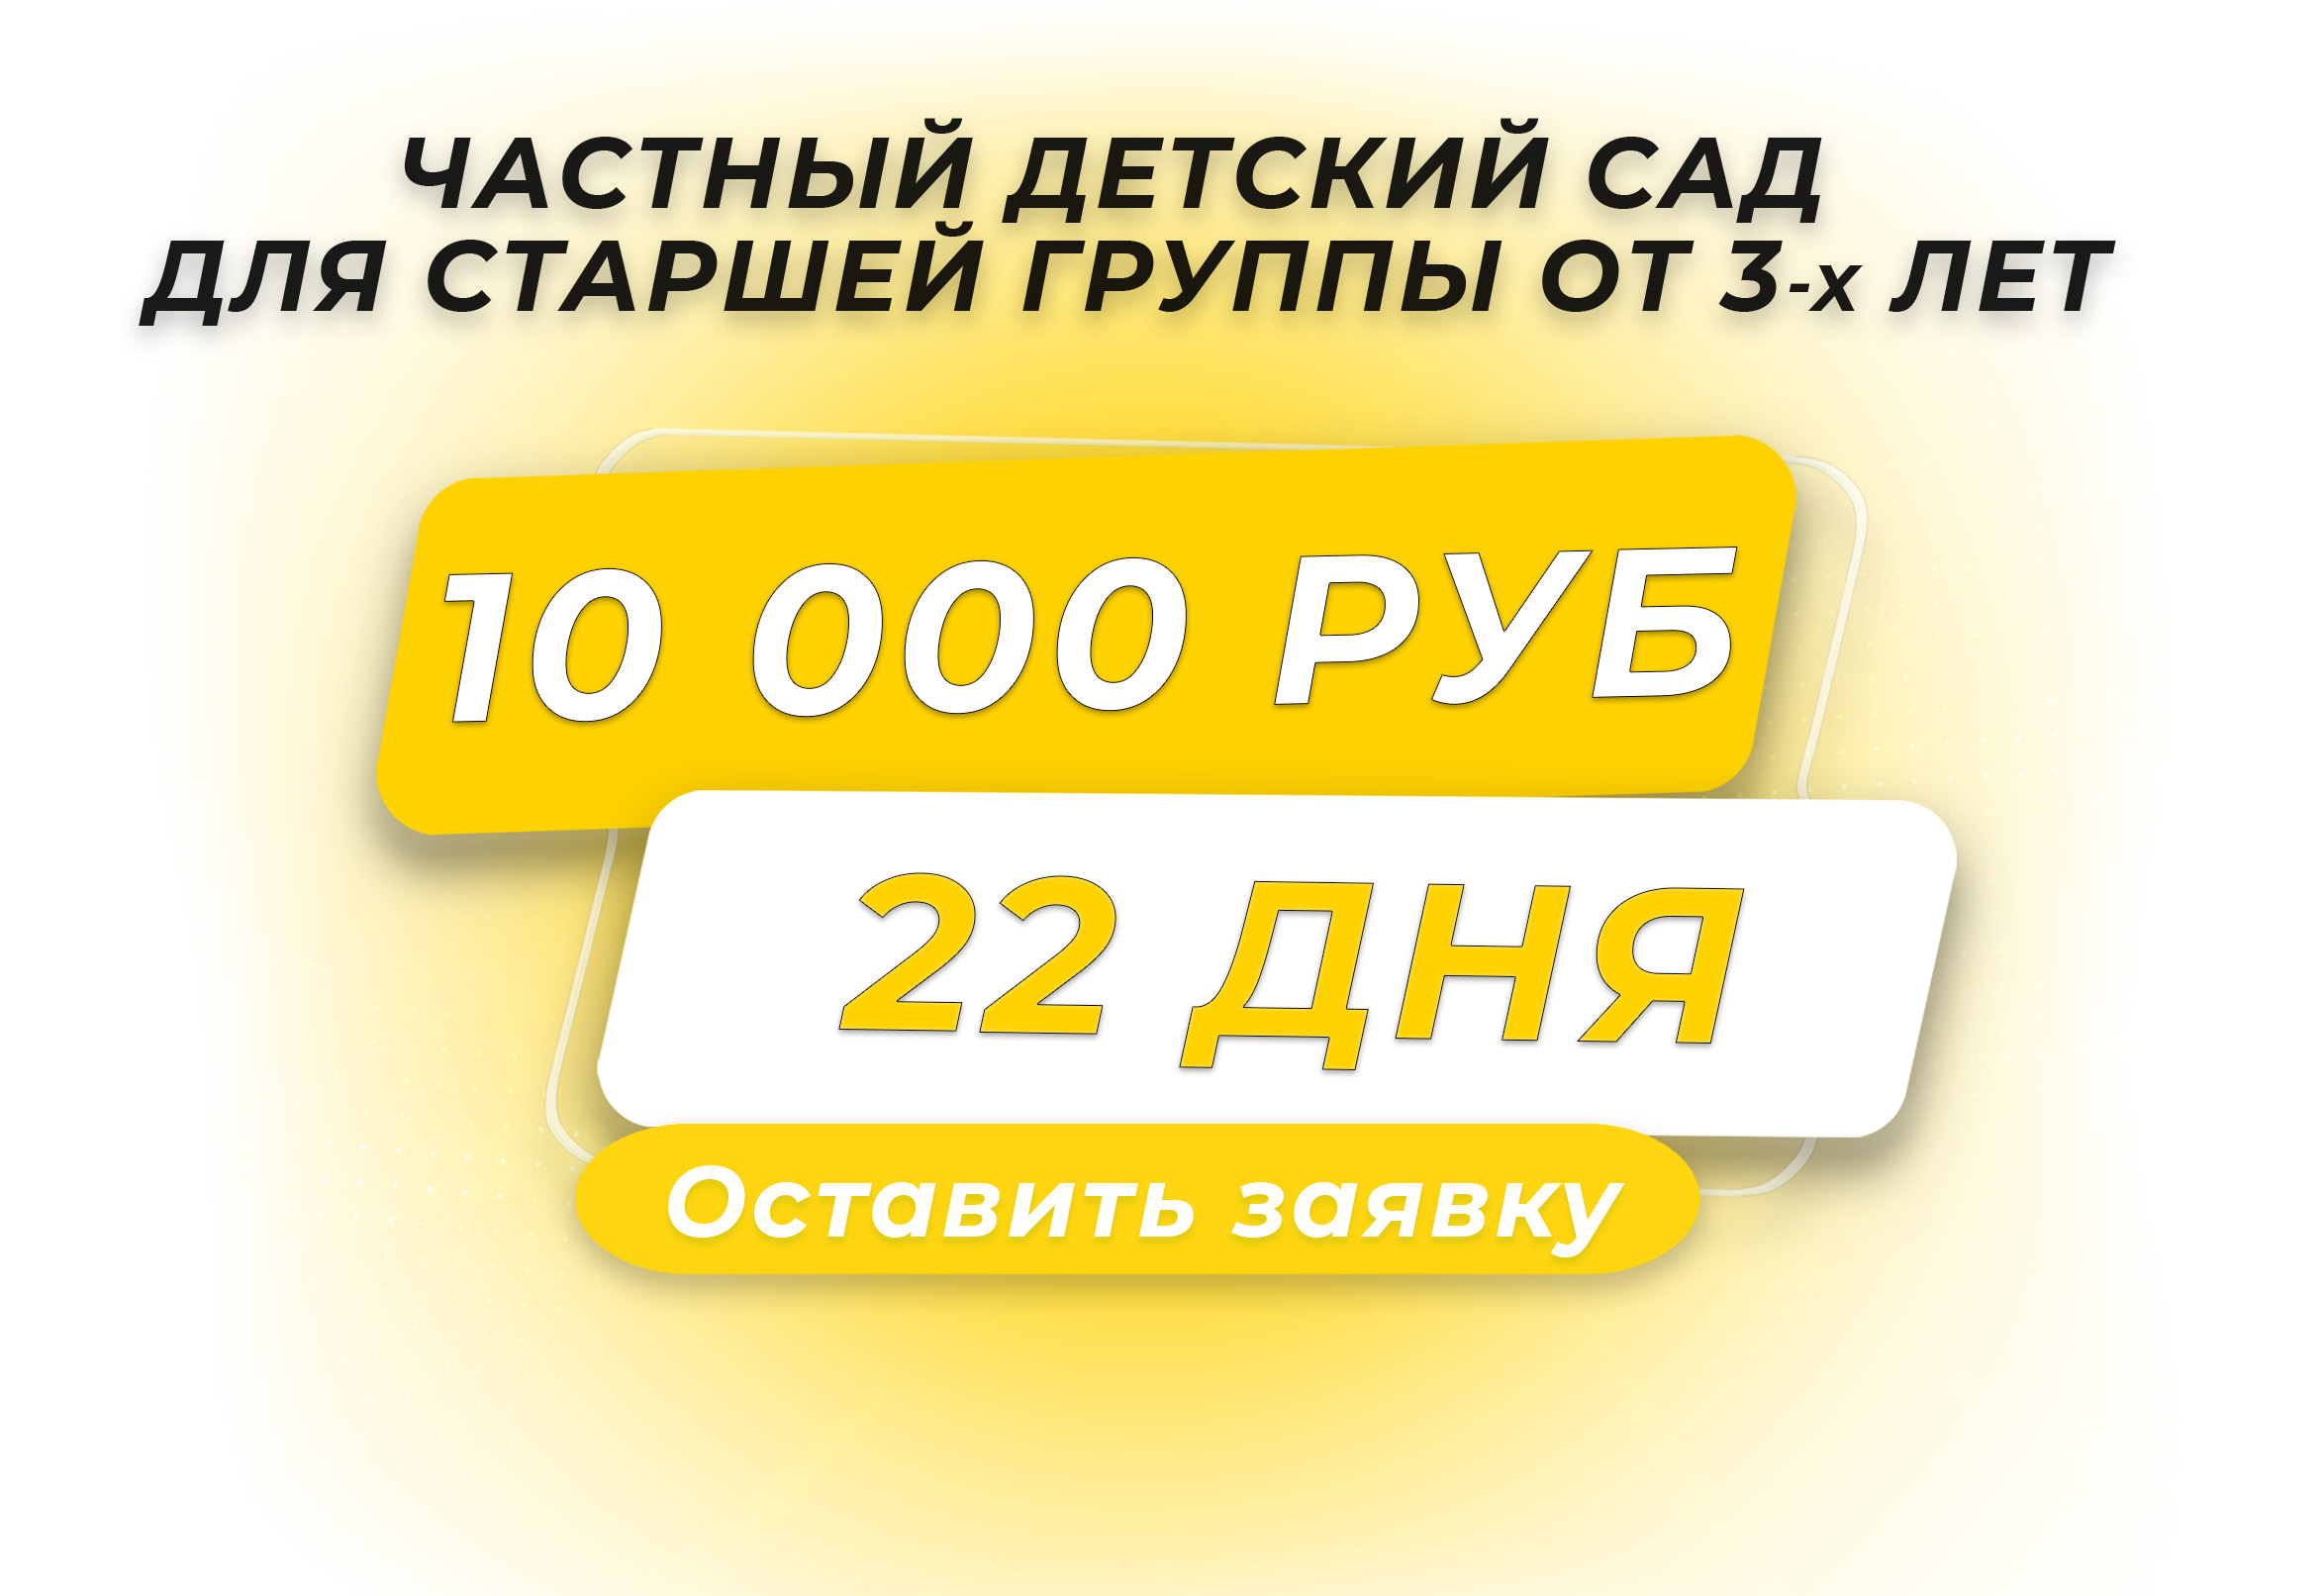 Акция - 10000 руб на полный месяц для старшей группы